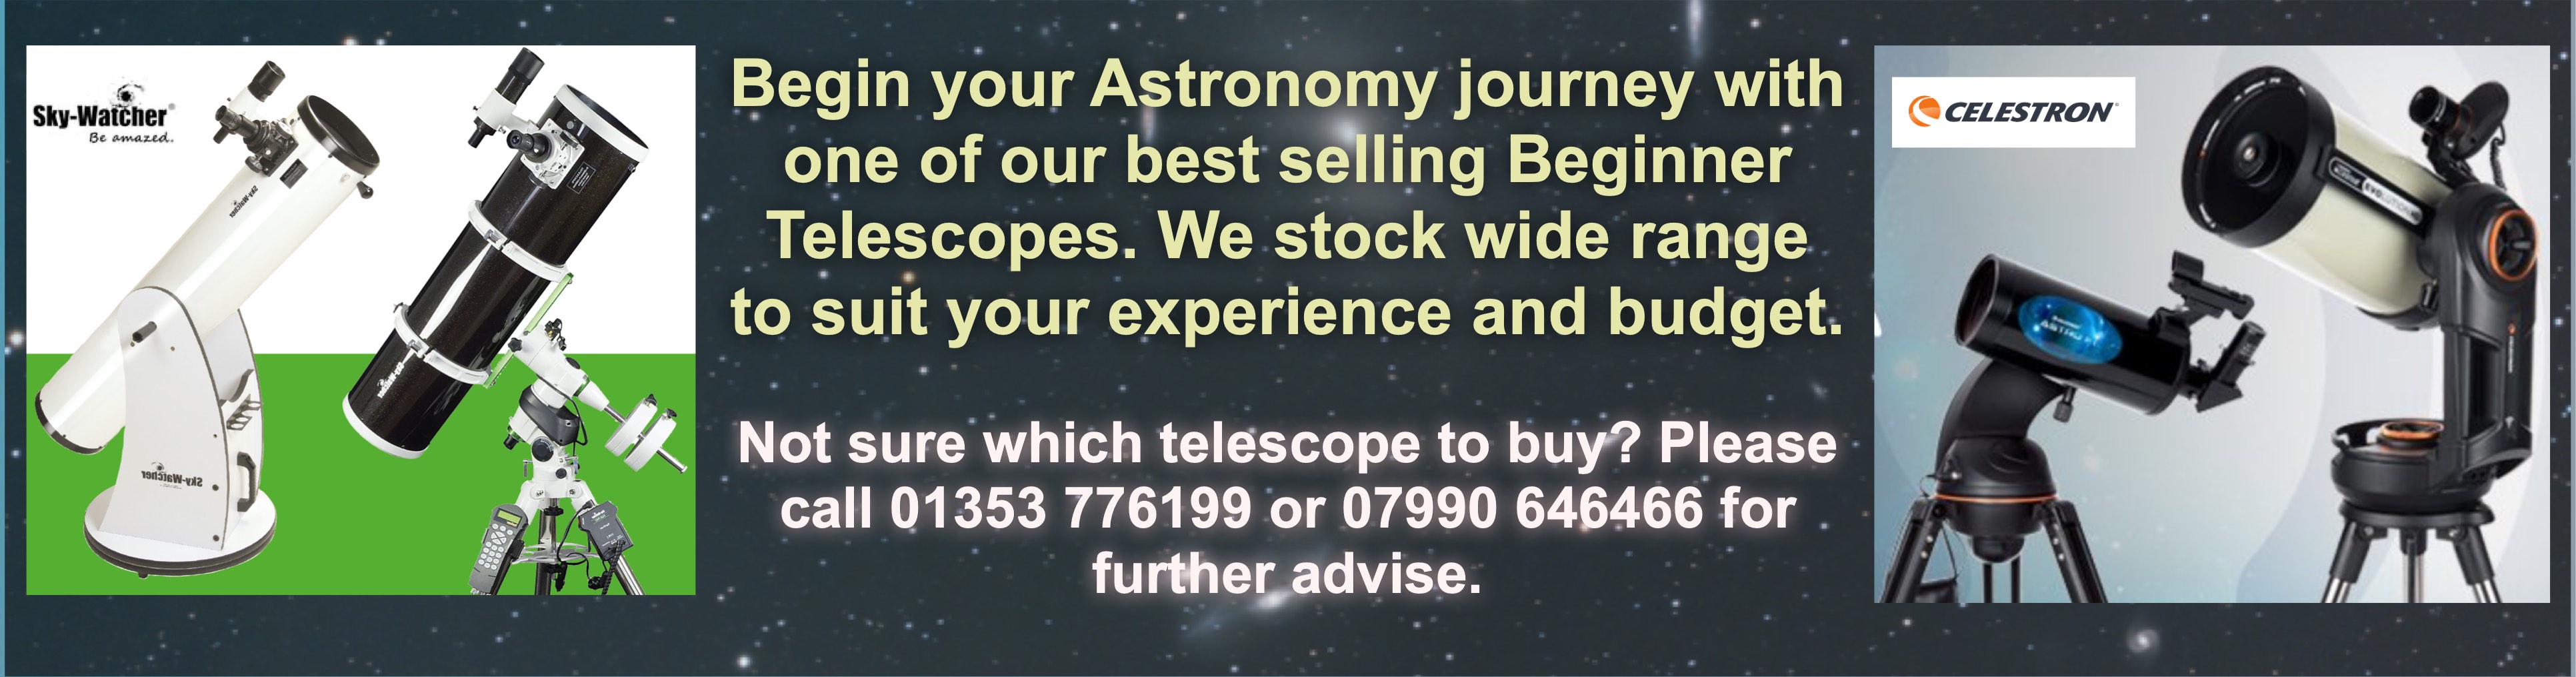 Beginners Telescopes Banner